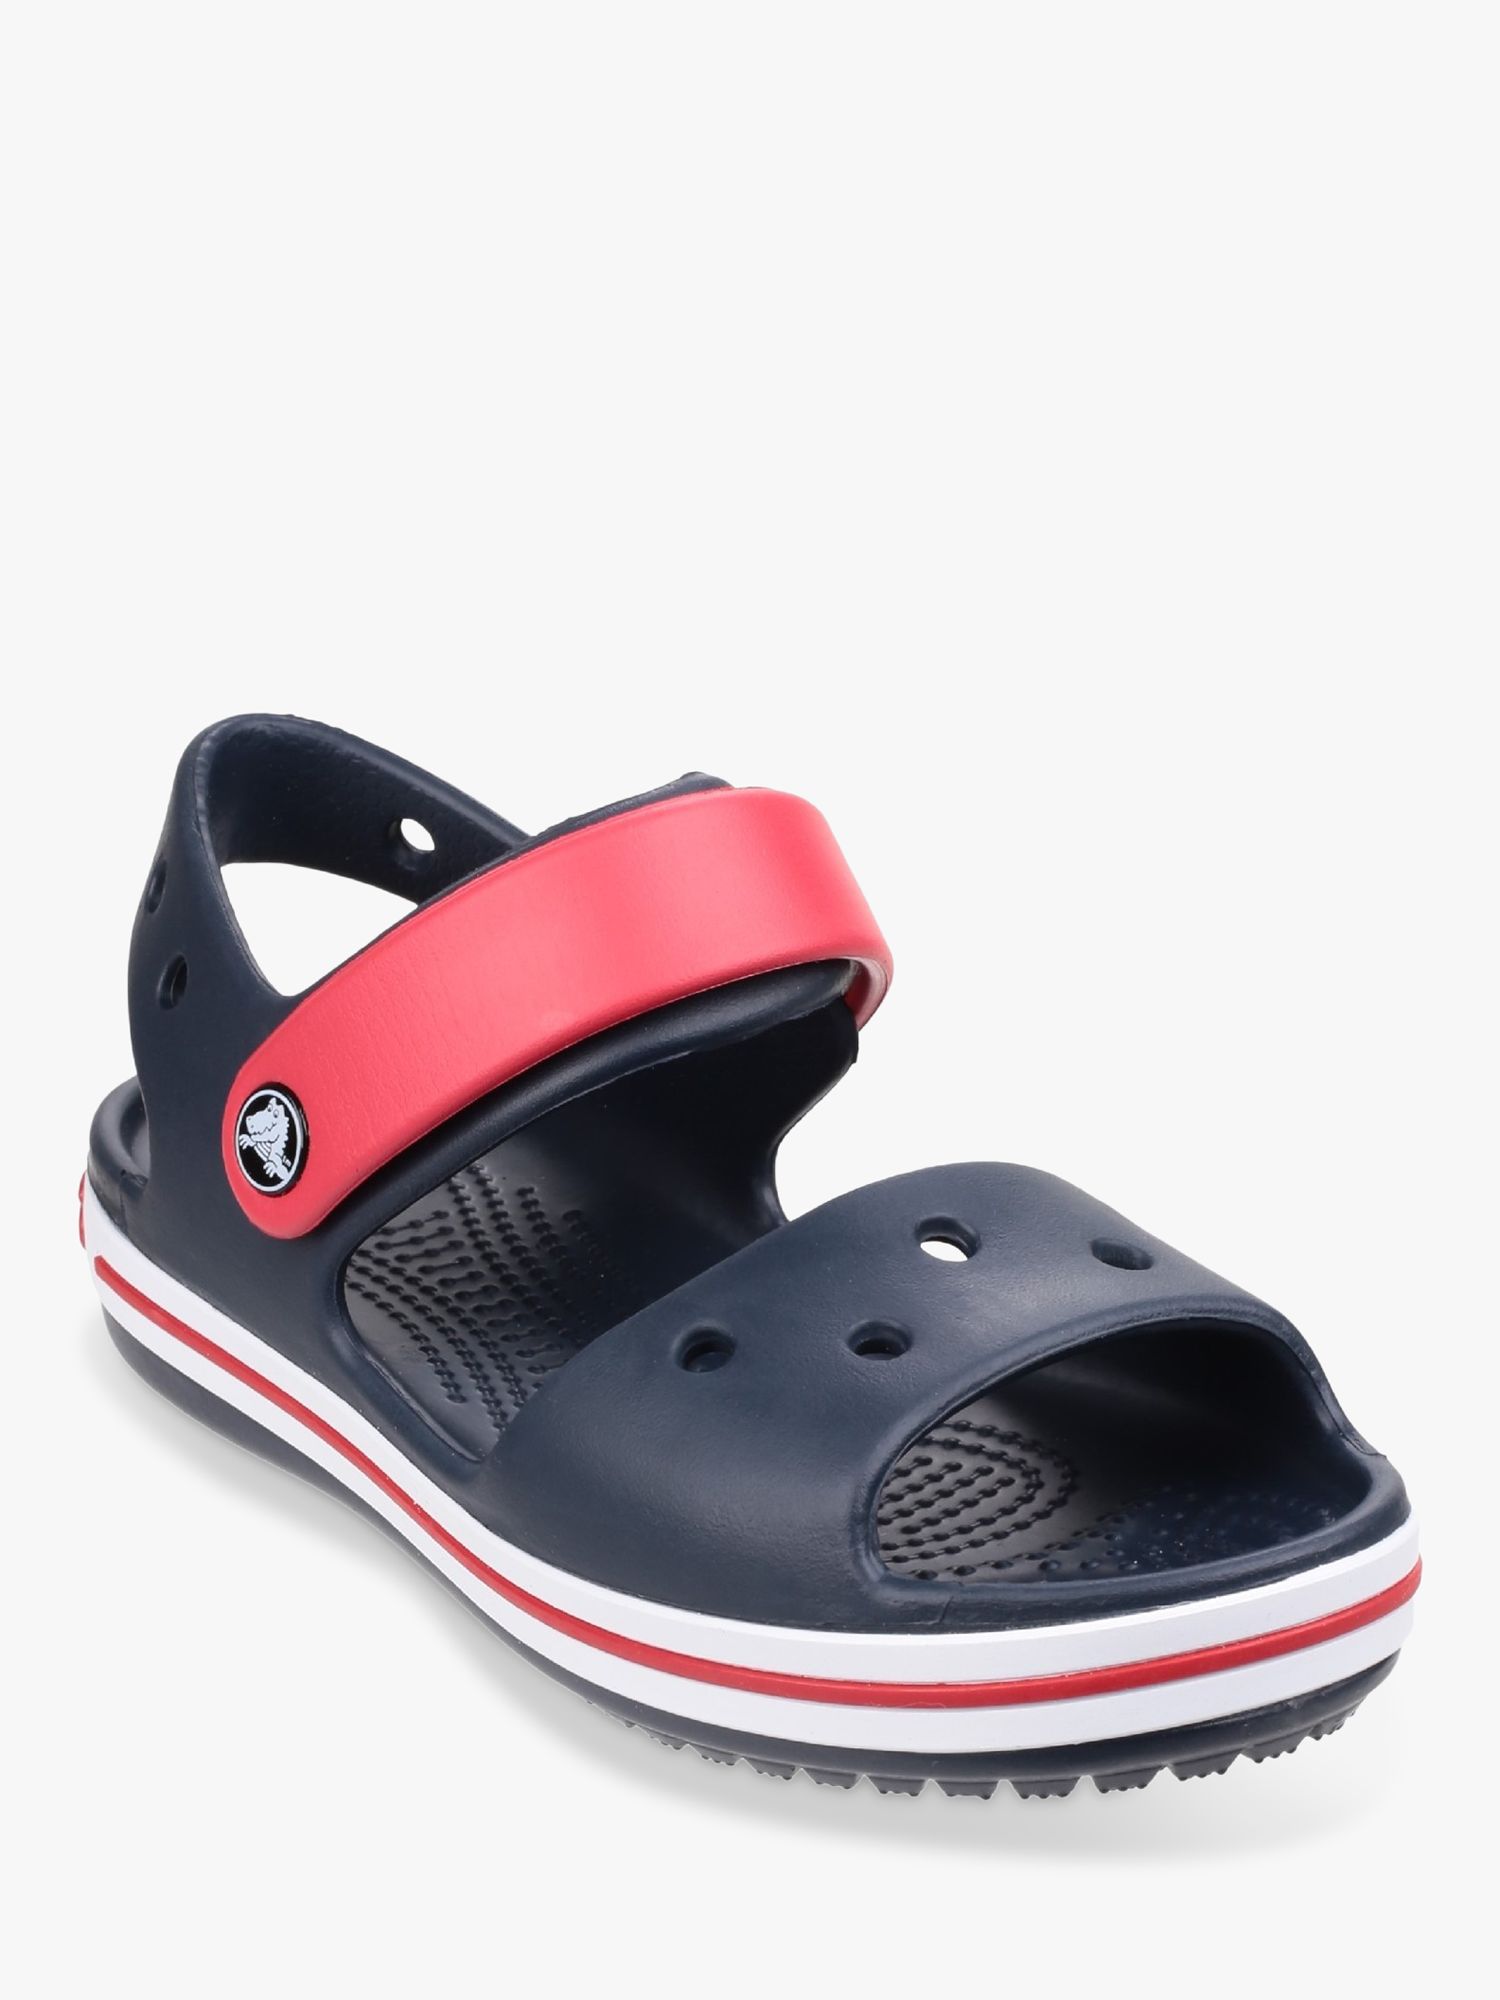 Buy Crocs Kids' Crocband Sandals, Navy/Red Online at johnlewis.com